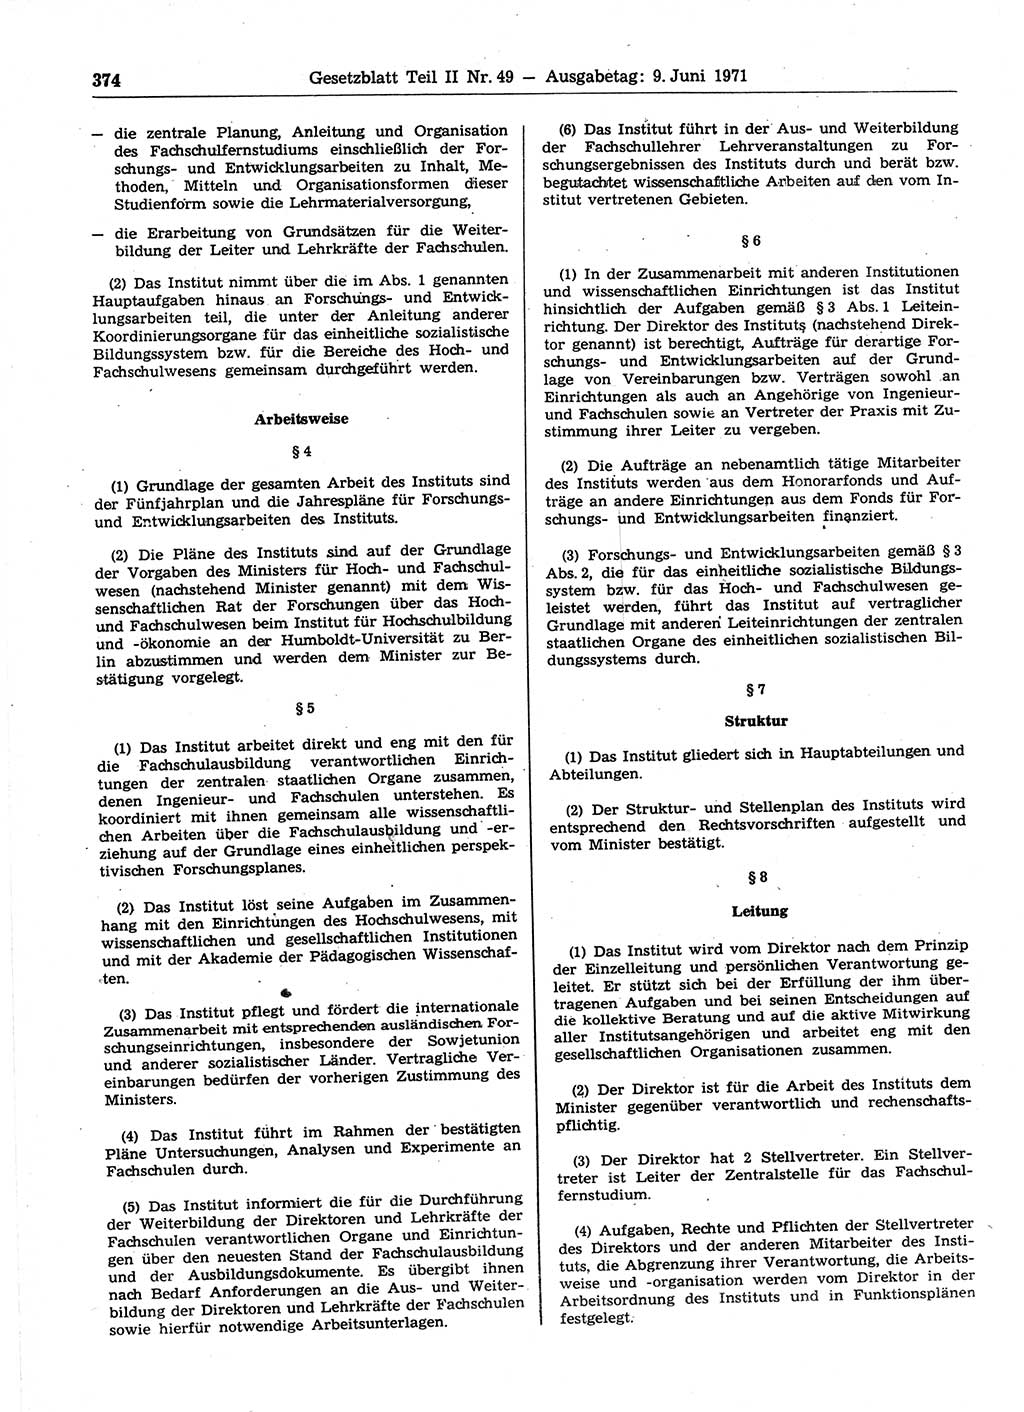 Gesetzblatt (GBl.) der Deutschen Demokratischen Republik (DDR) Teil ⅠⅠ 1971, Seite 374 (GBl. DDR ⅠⅠ 1971, S. 374)